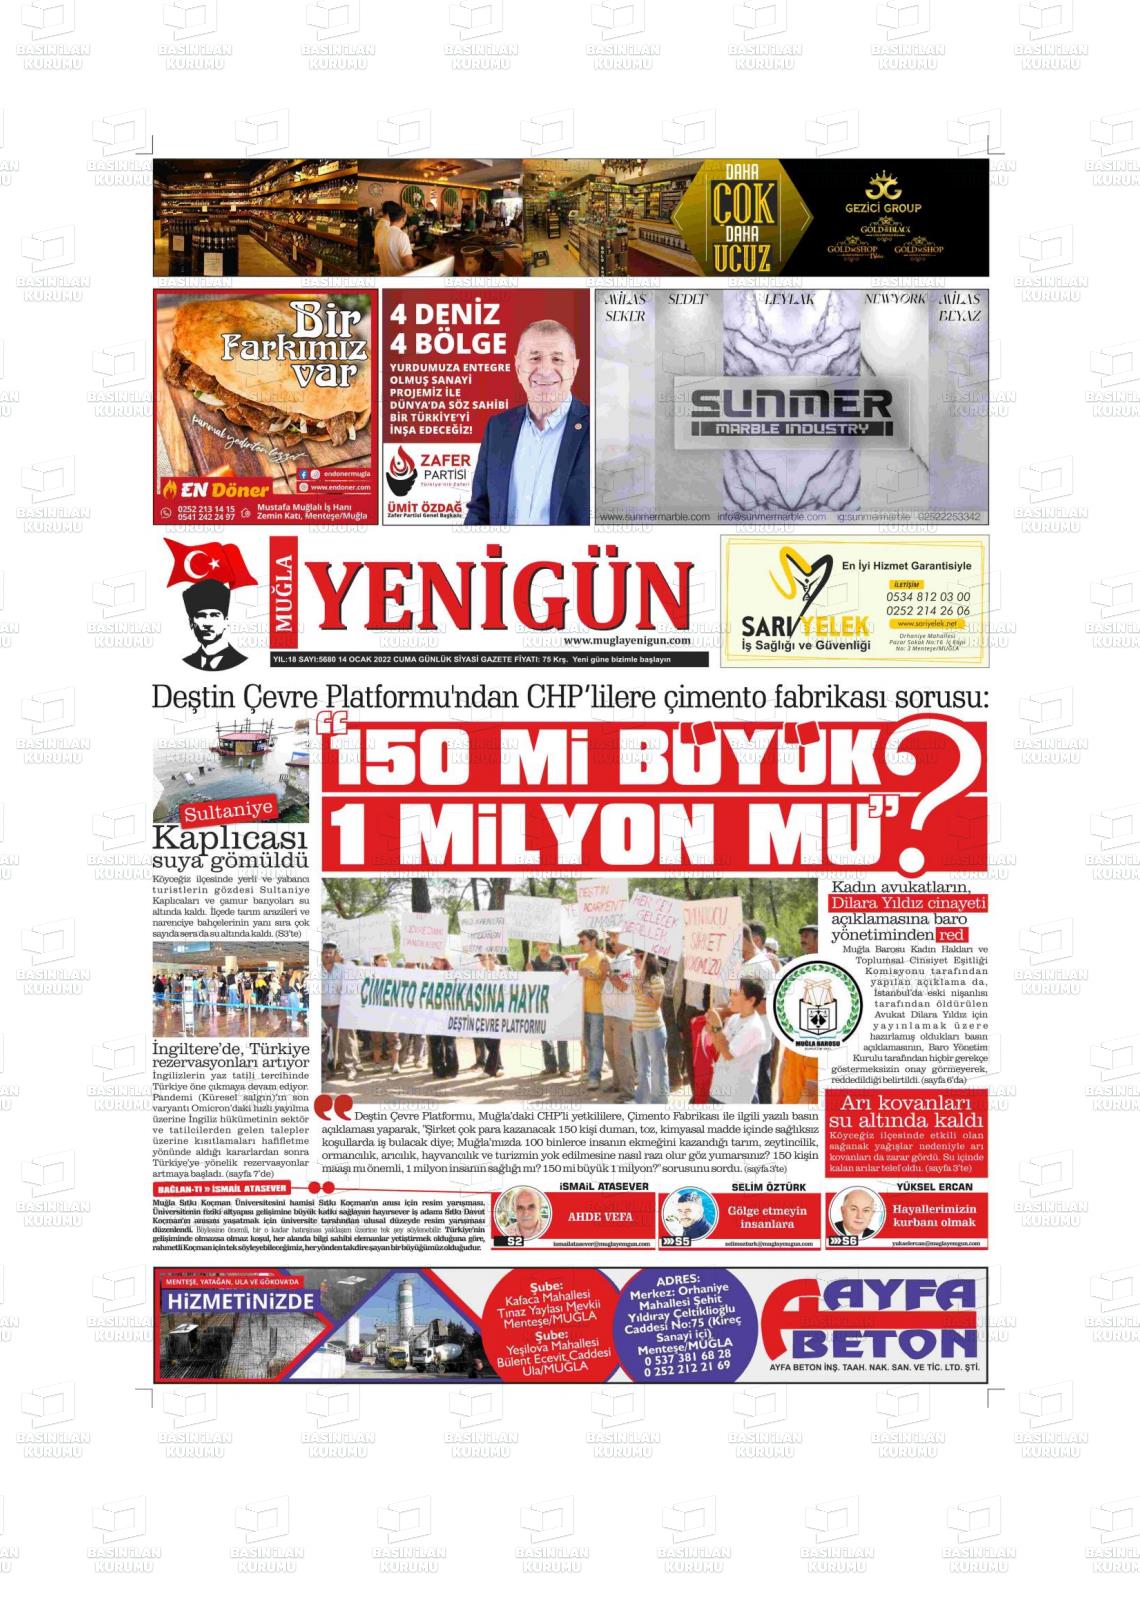 14 Ocak 2022 Muğla Yenigün Gazete Manşeti